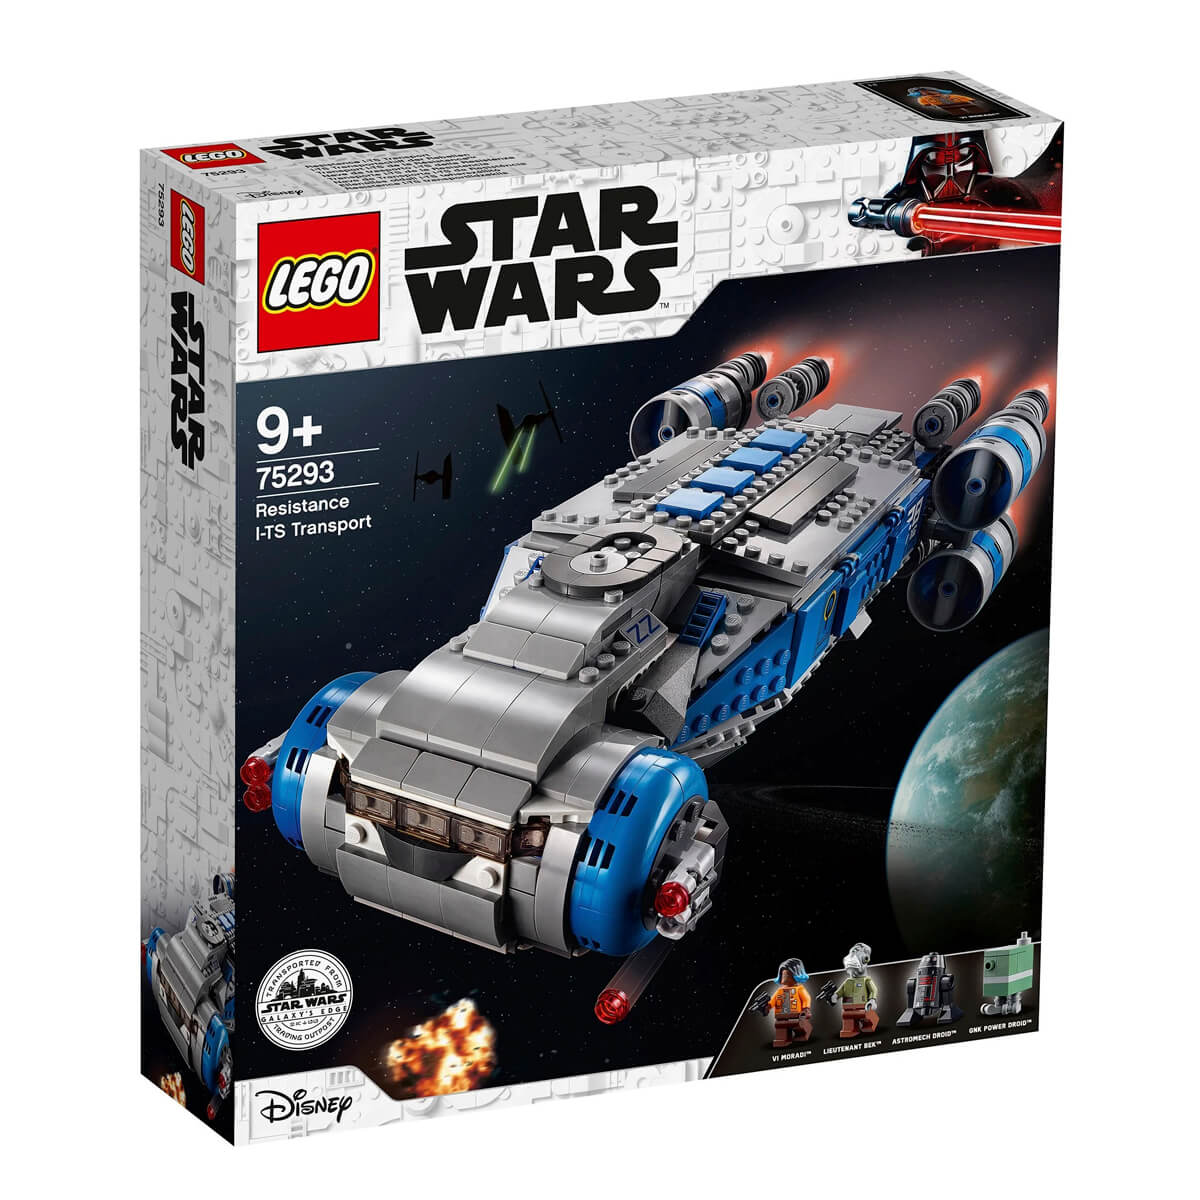 Конструктор LEGO Star Wars 75293 Транспортный корабль Сопротивления I-TS полная энциклопедия lego star wars